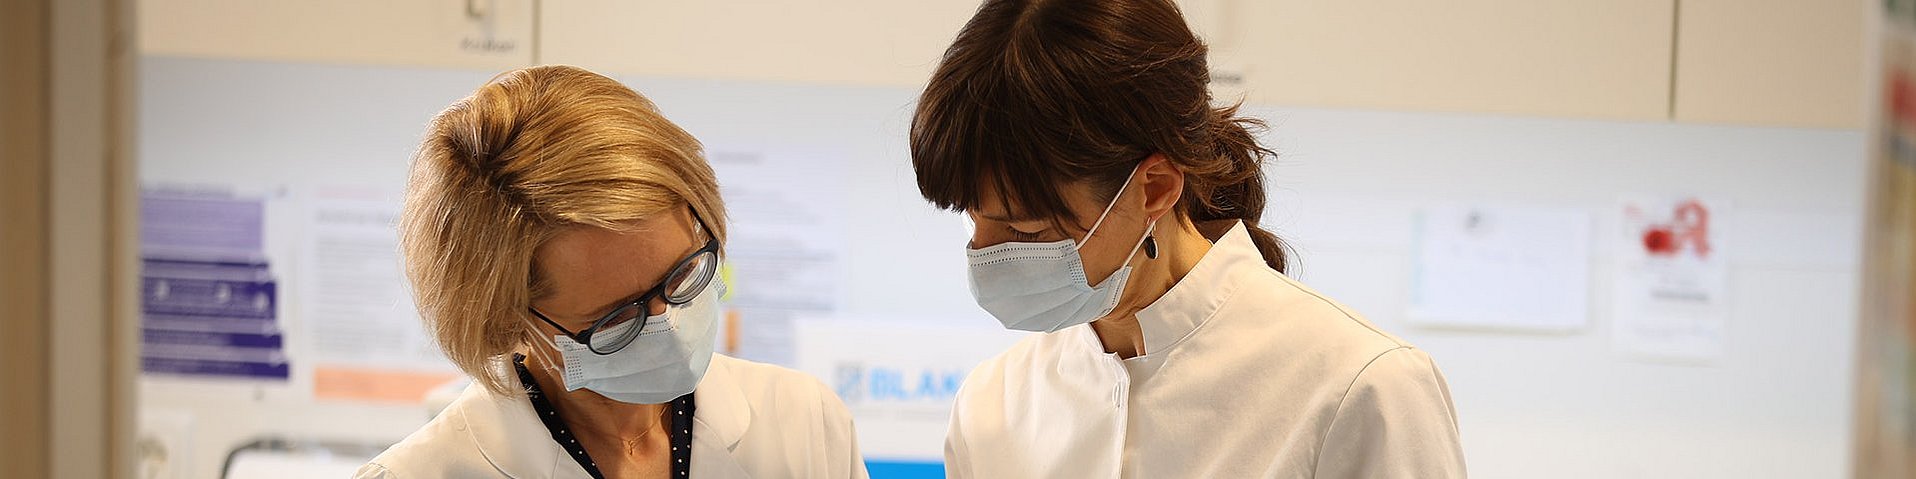 Zwei Apothekerinnen mit Mundschutz sehen sich konzentriert Formulare an. Sie befinden sich in einem Labor. Eine hält eine weiß-rote Dose in den Händen.